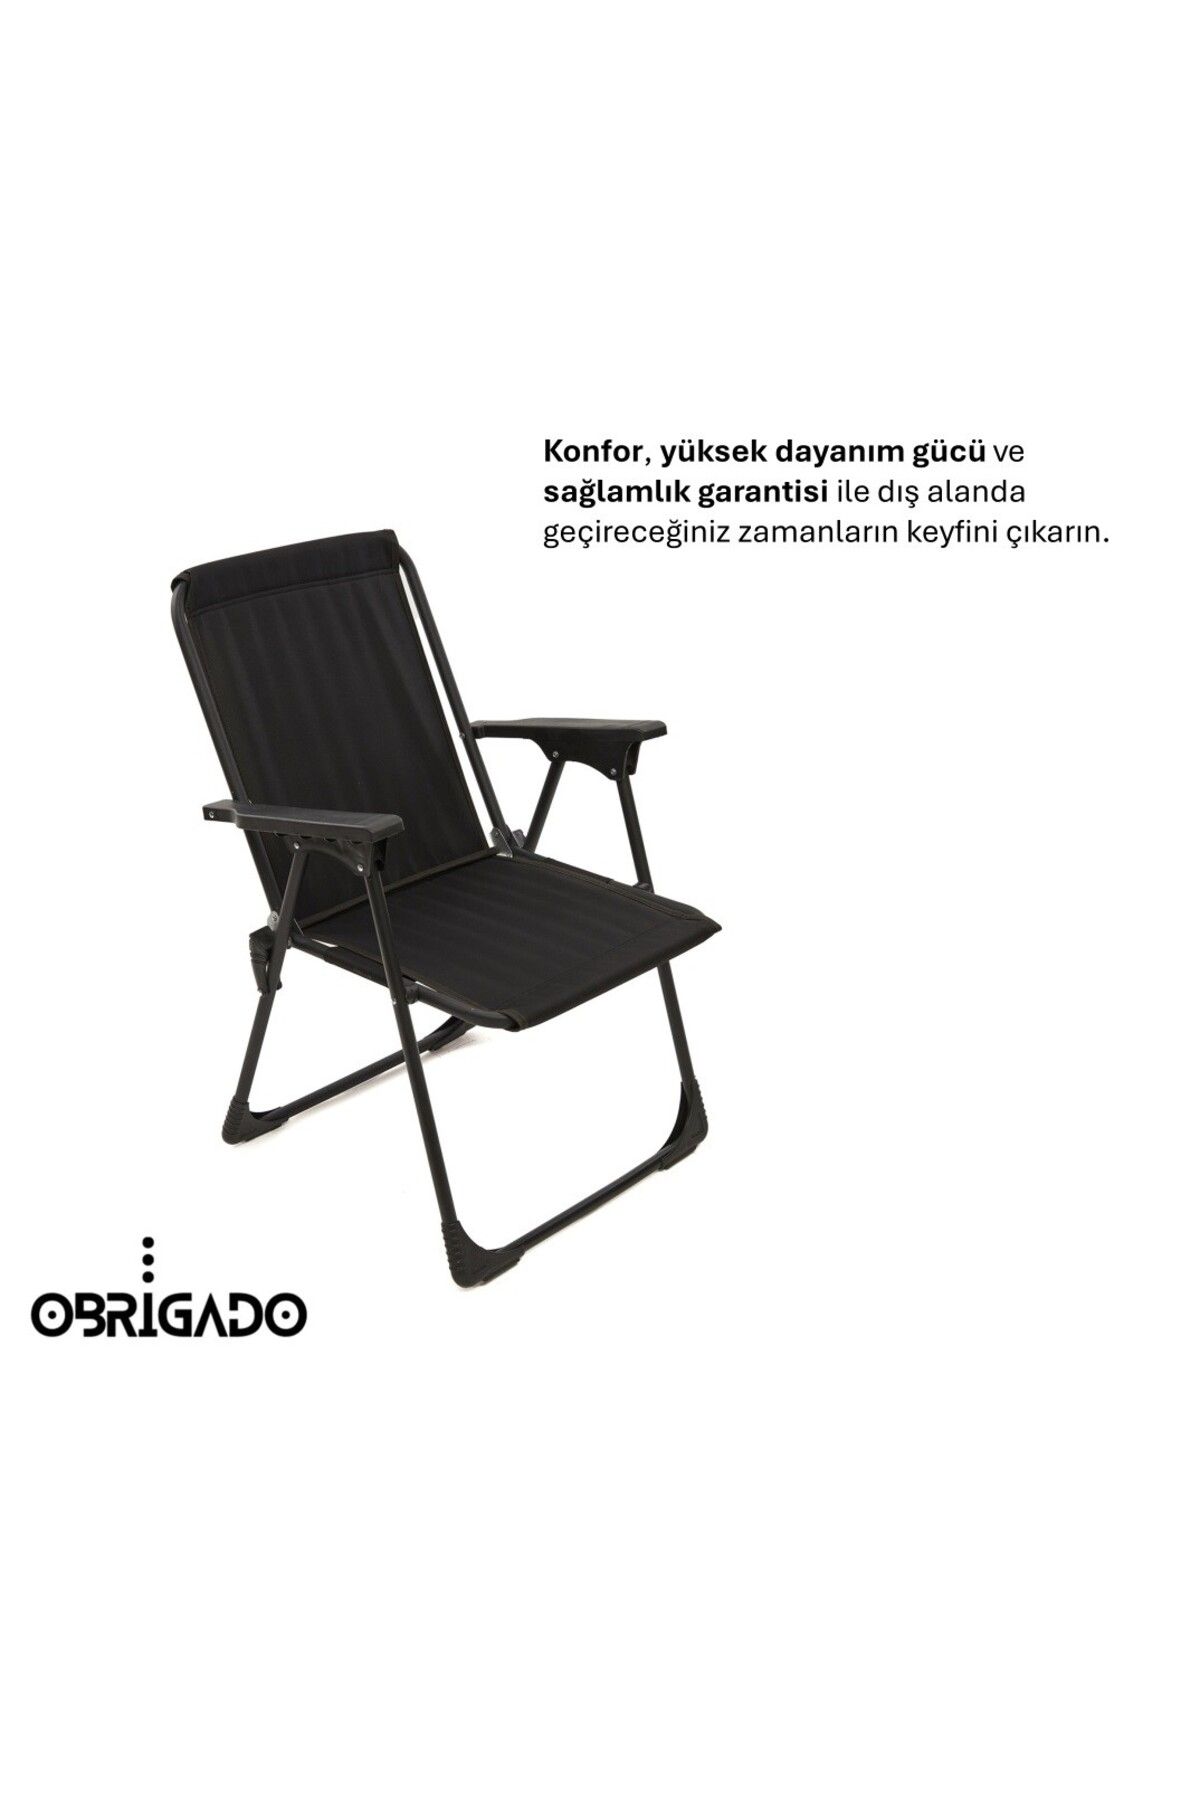 obrigado Katlanır Kamp Piknik Bahçe Plaj Sandalyesi Dayanıklı Lüks Kolay Taşınır Ergonomik Katlanır Sandalye